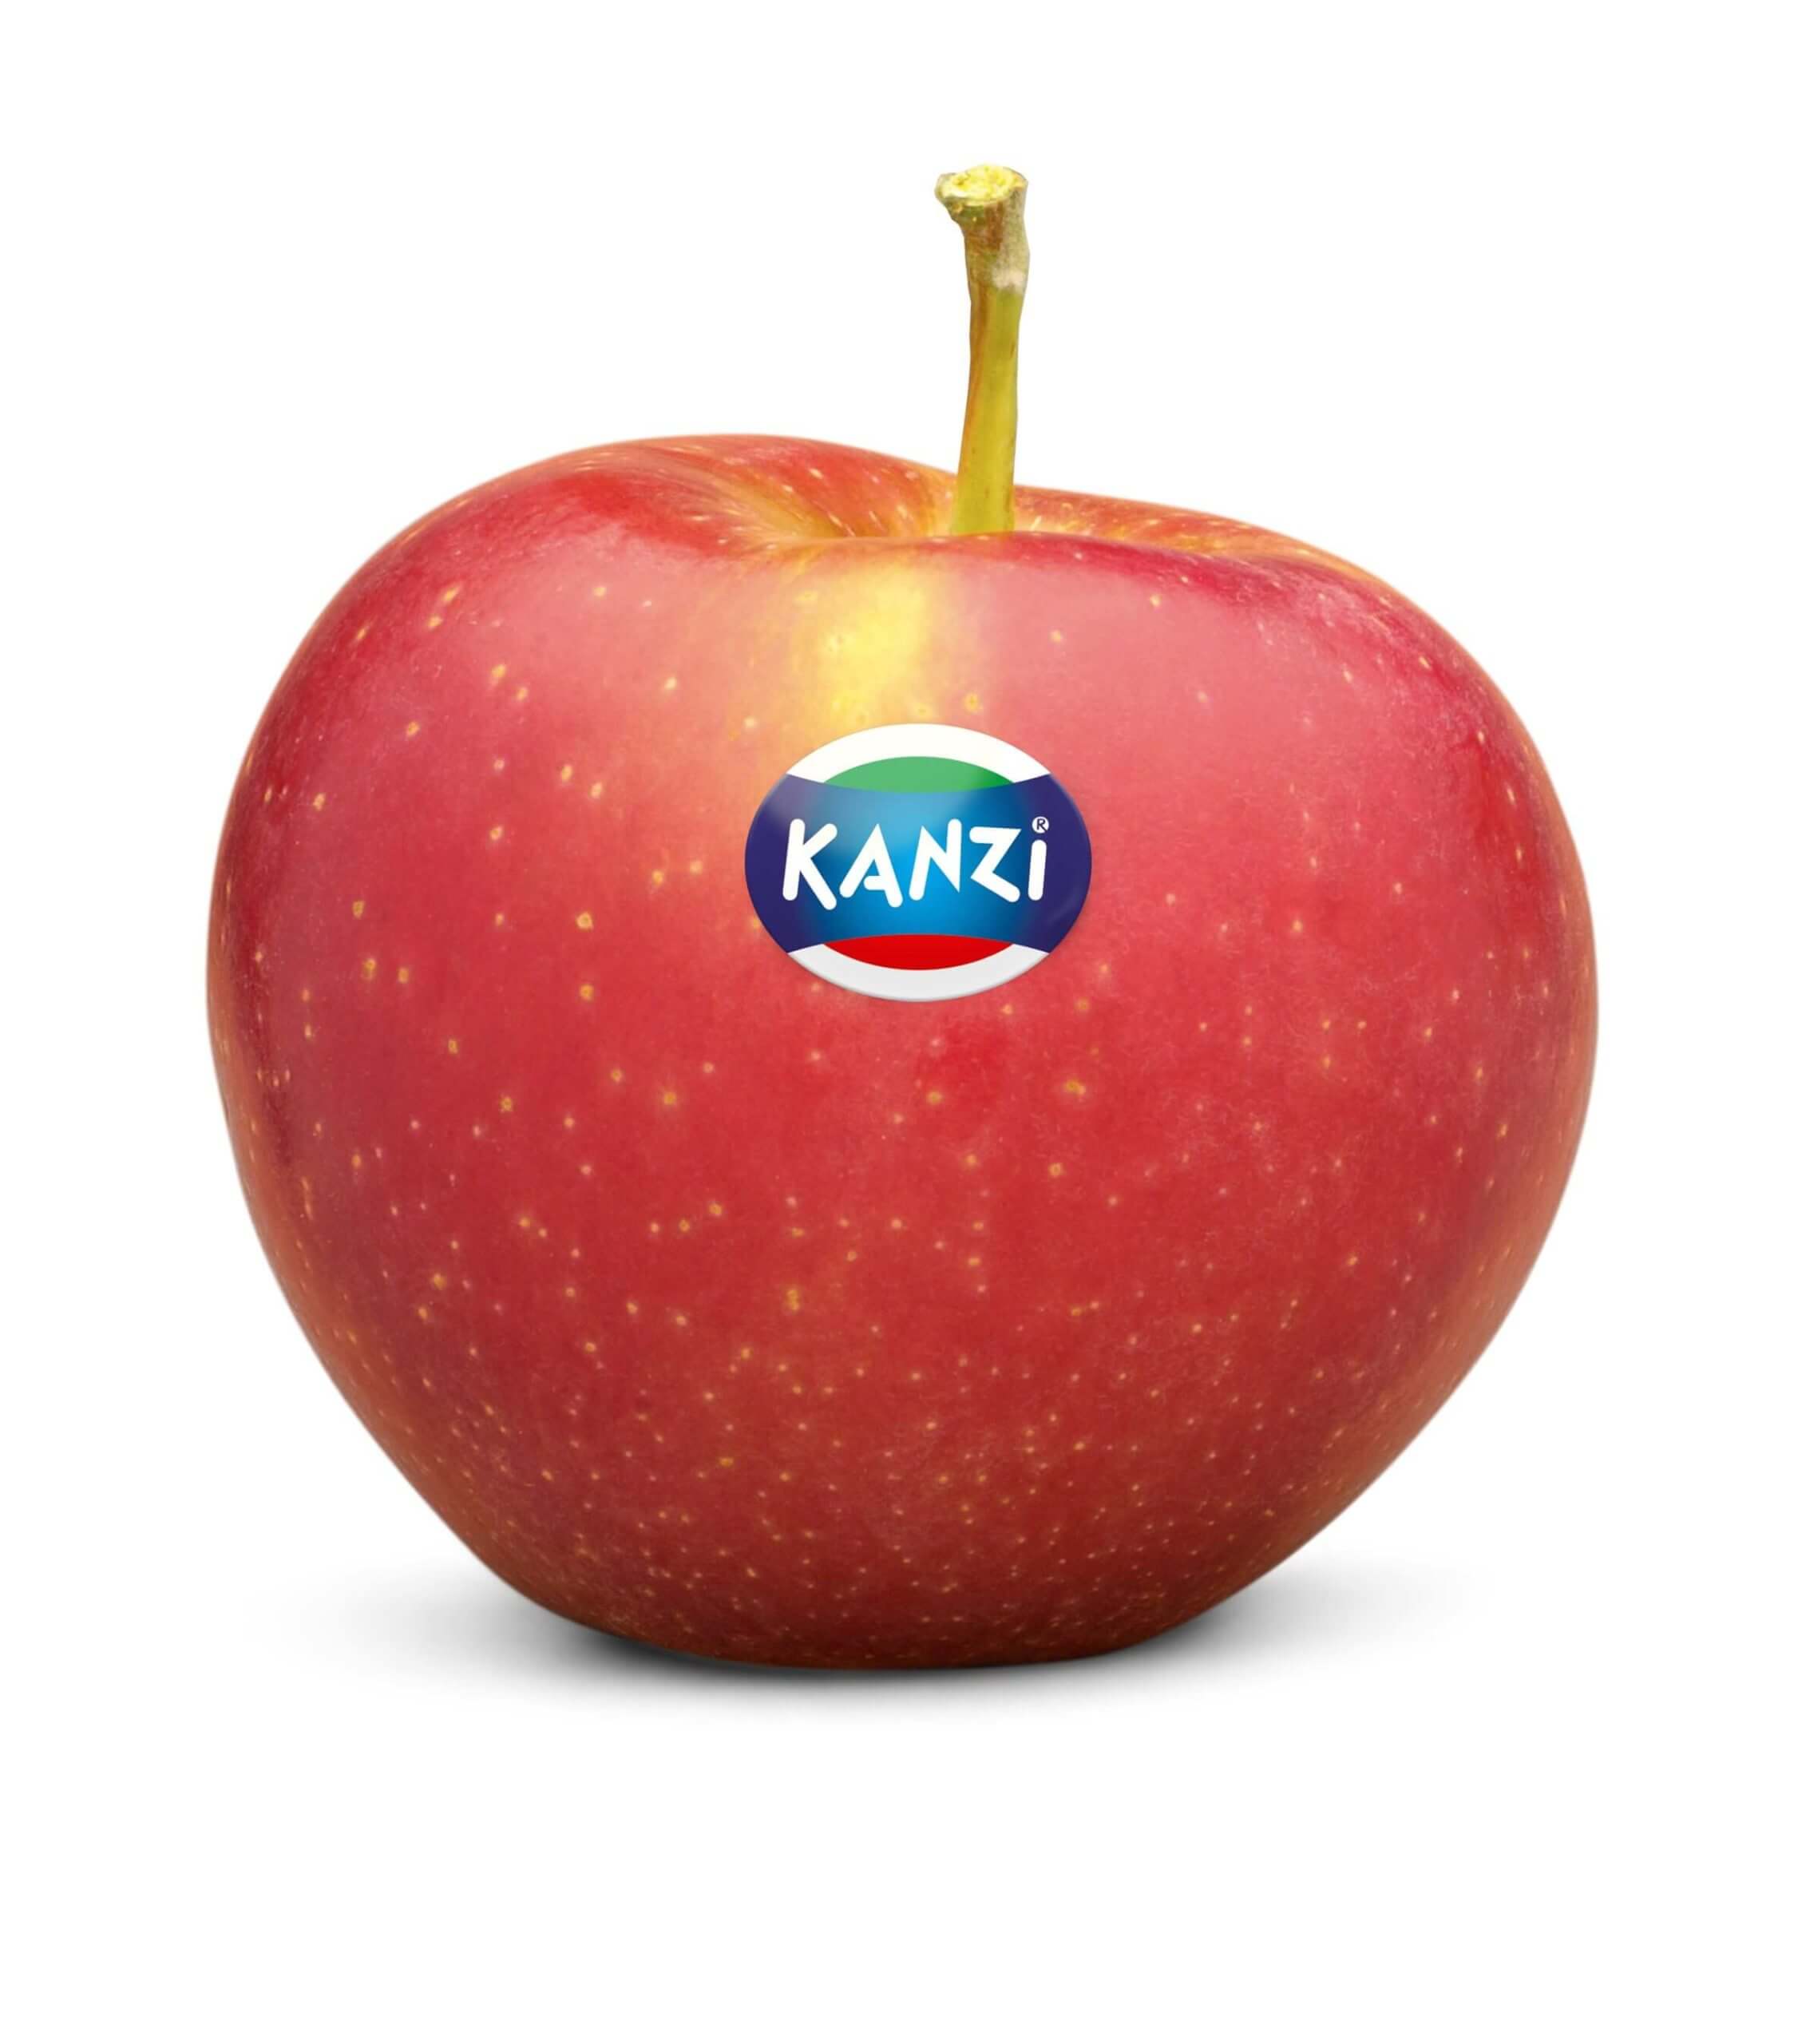 kanzi apple